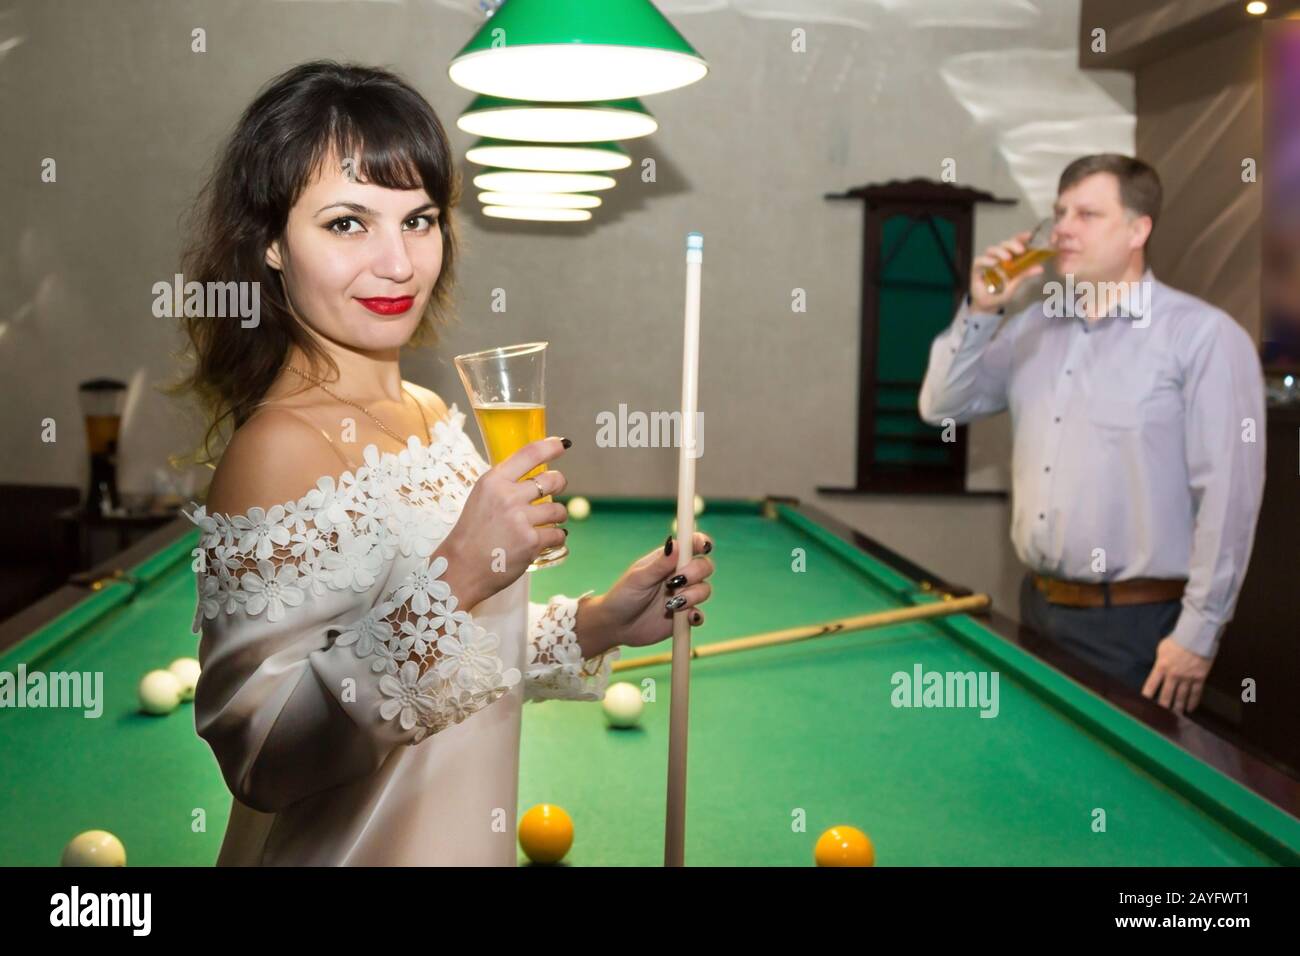 Adult people lovers play billiards